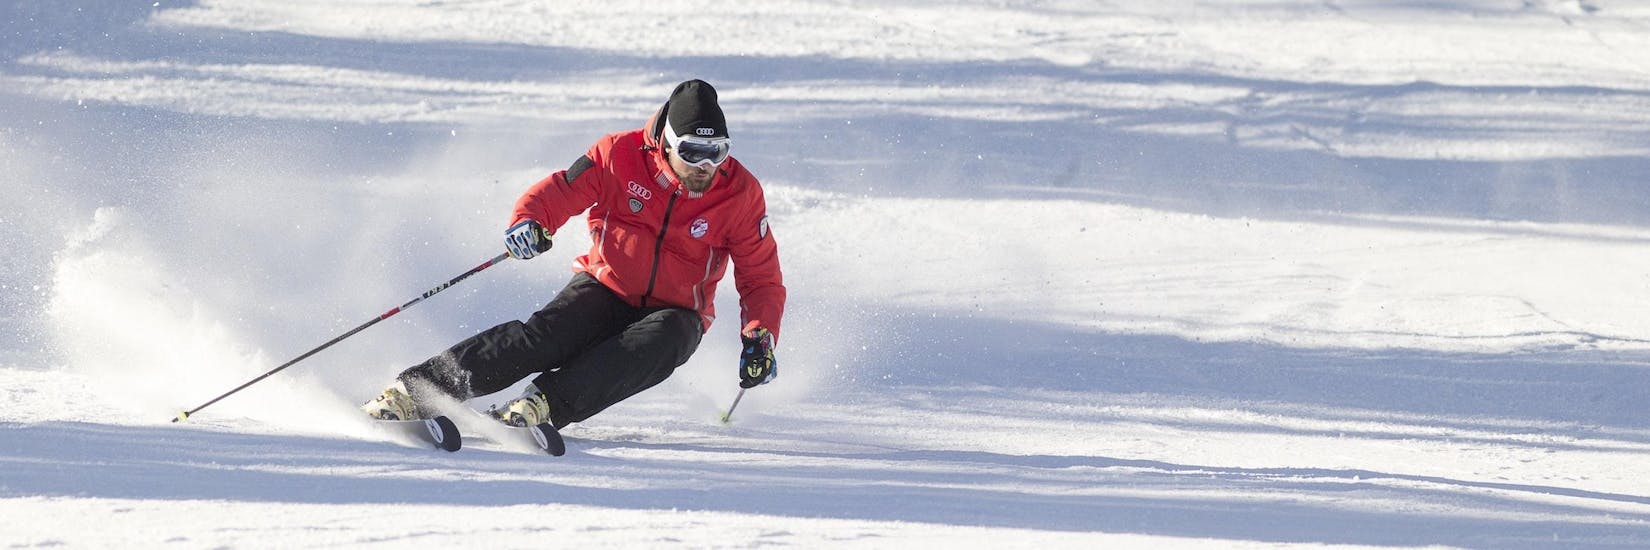 Een skileraar van Scuola Sci Cortina demonstreert de juiste skitechniek tijdens een van de Skilessen voor Volwassenen - Beginners in het skigebied van Cortina d'Ampezzo.